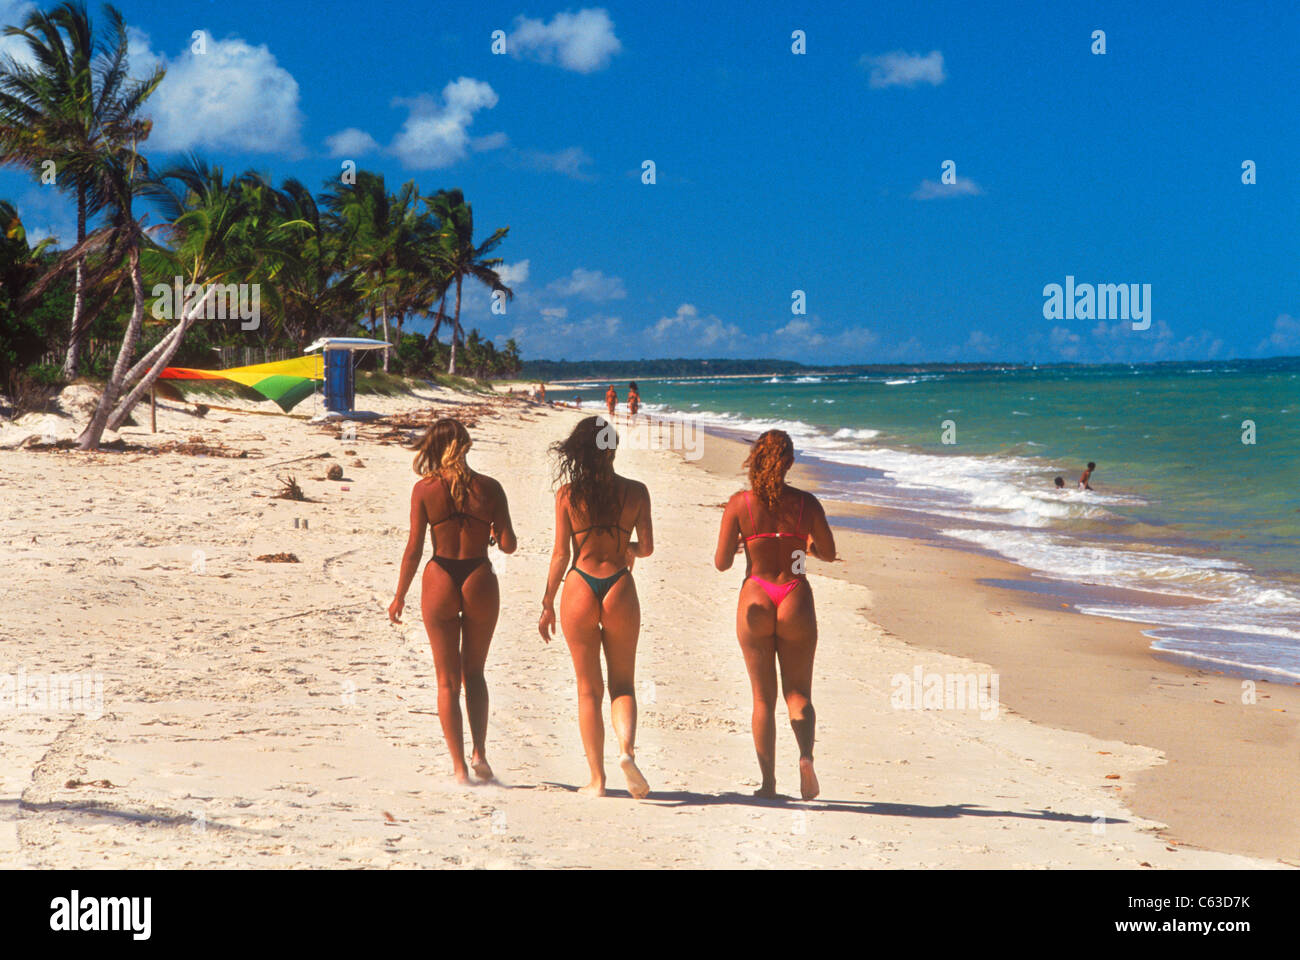 Salvador da Bahia sur l'océan Atlantique a 50 km du Brésil's top resorts, organes, bikinis et plages Banque D'Images